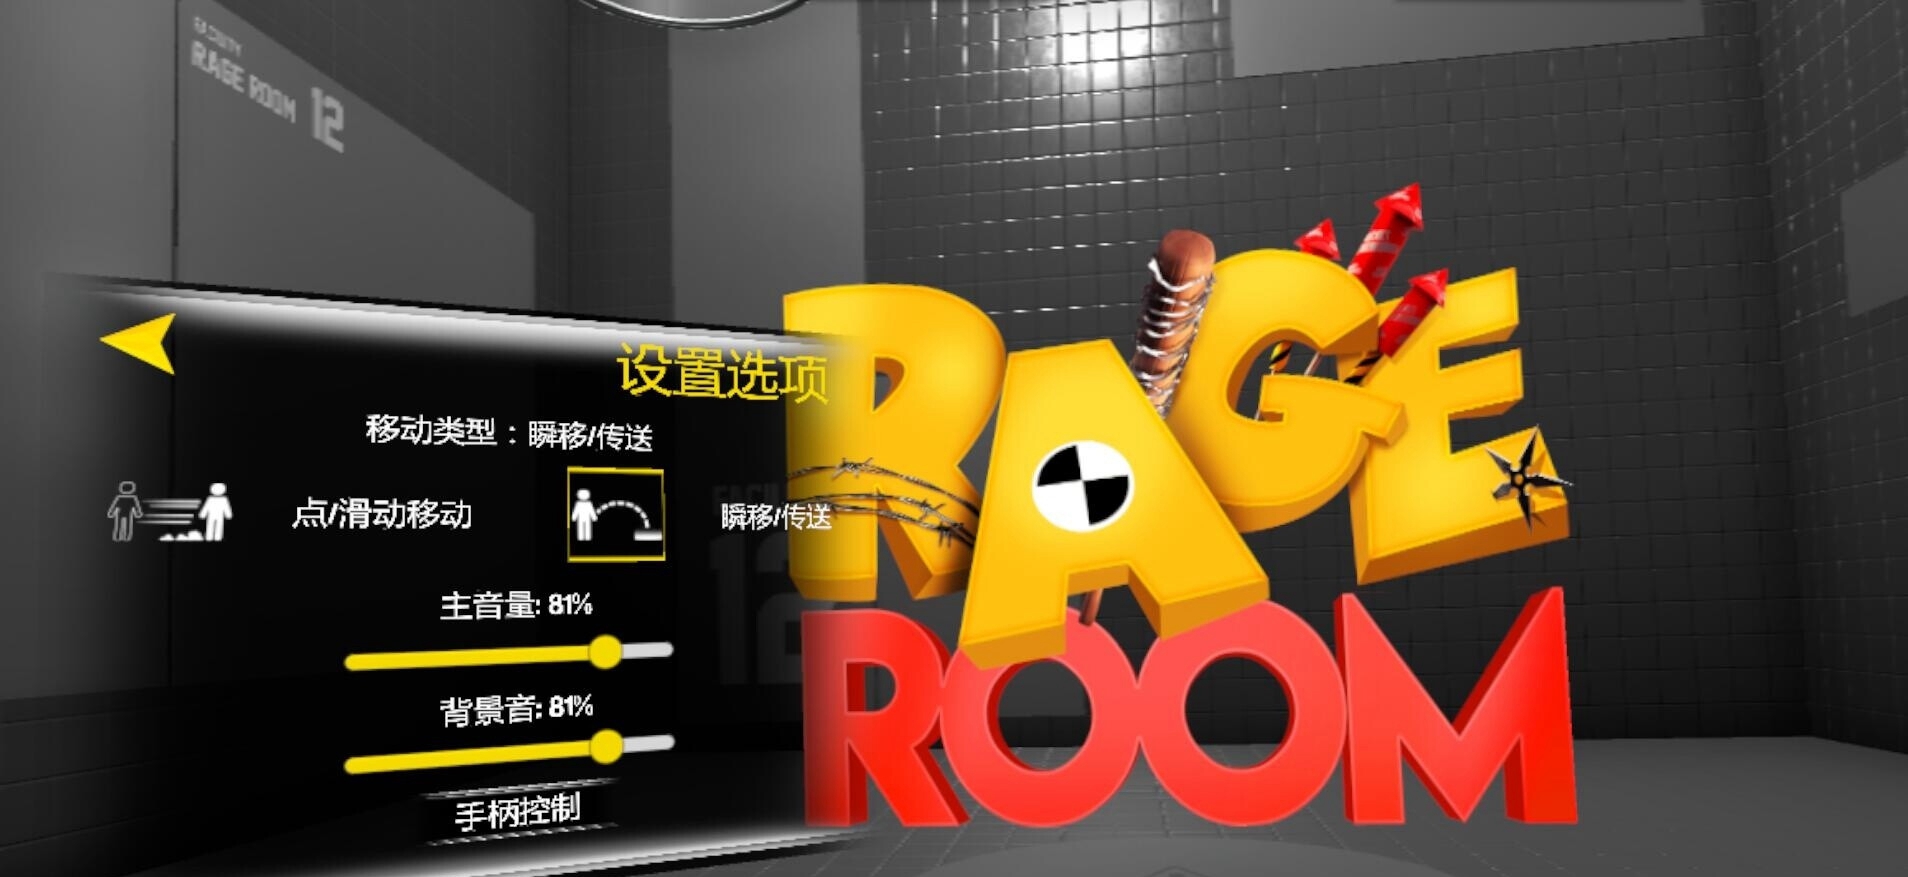 【独家VR汉化】泄怒之屋 VR (汉化版) (Rage Room)